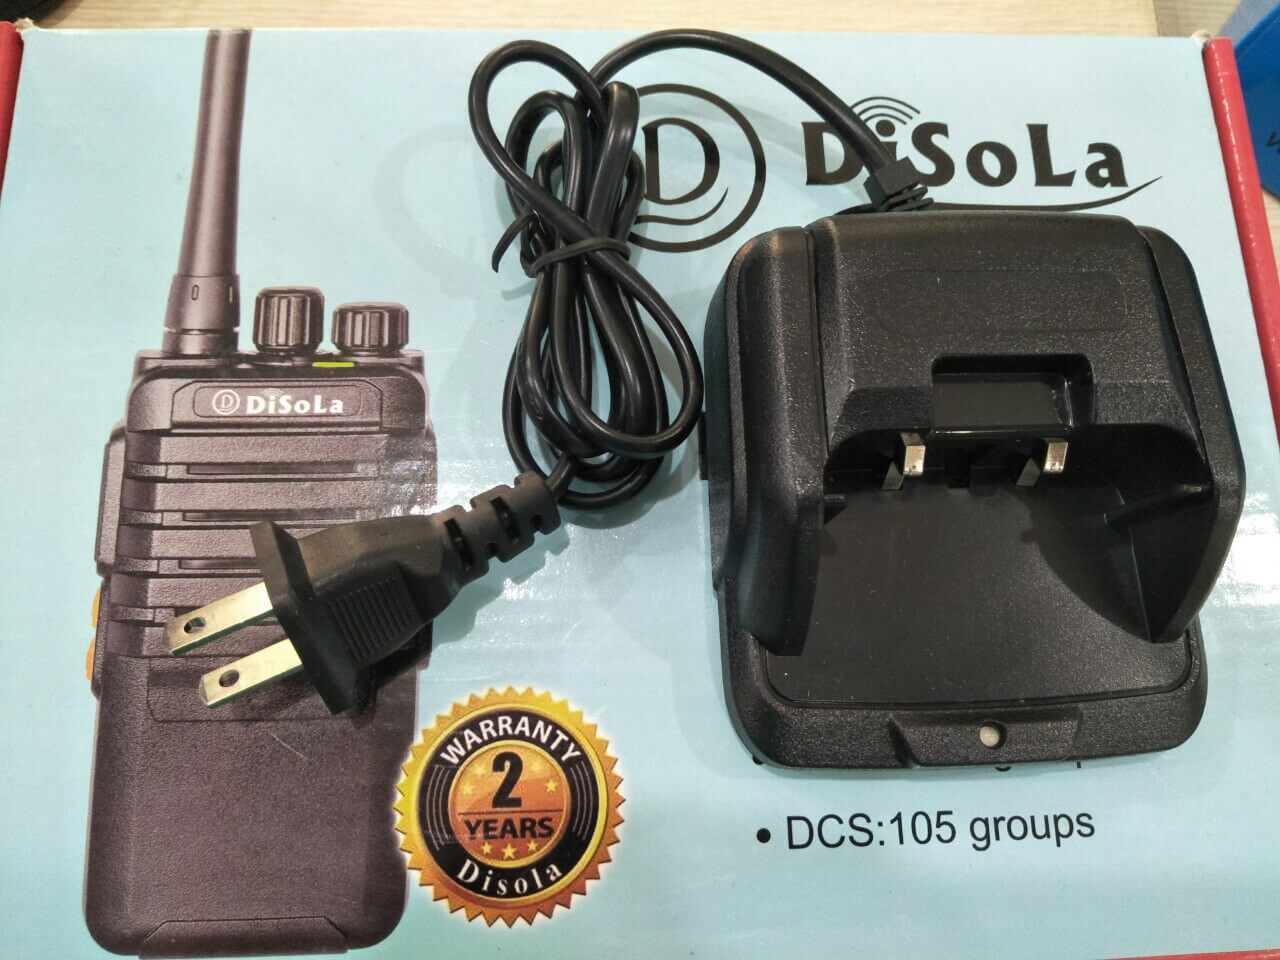 Sạc bộ đàm Disola DS 1700